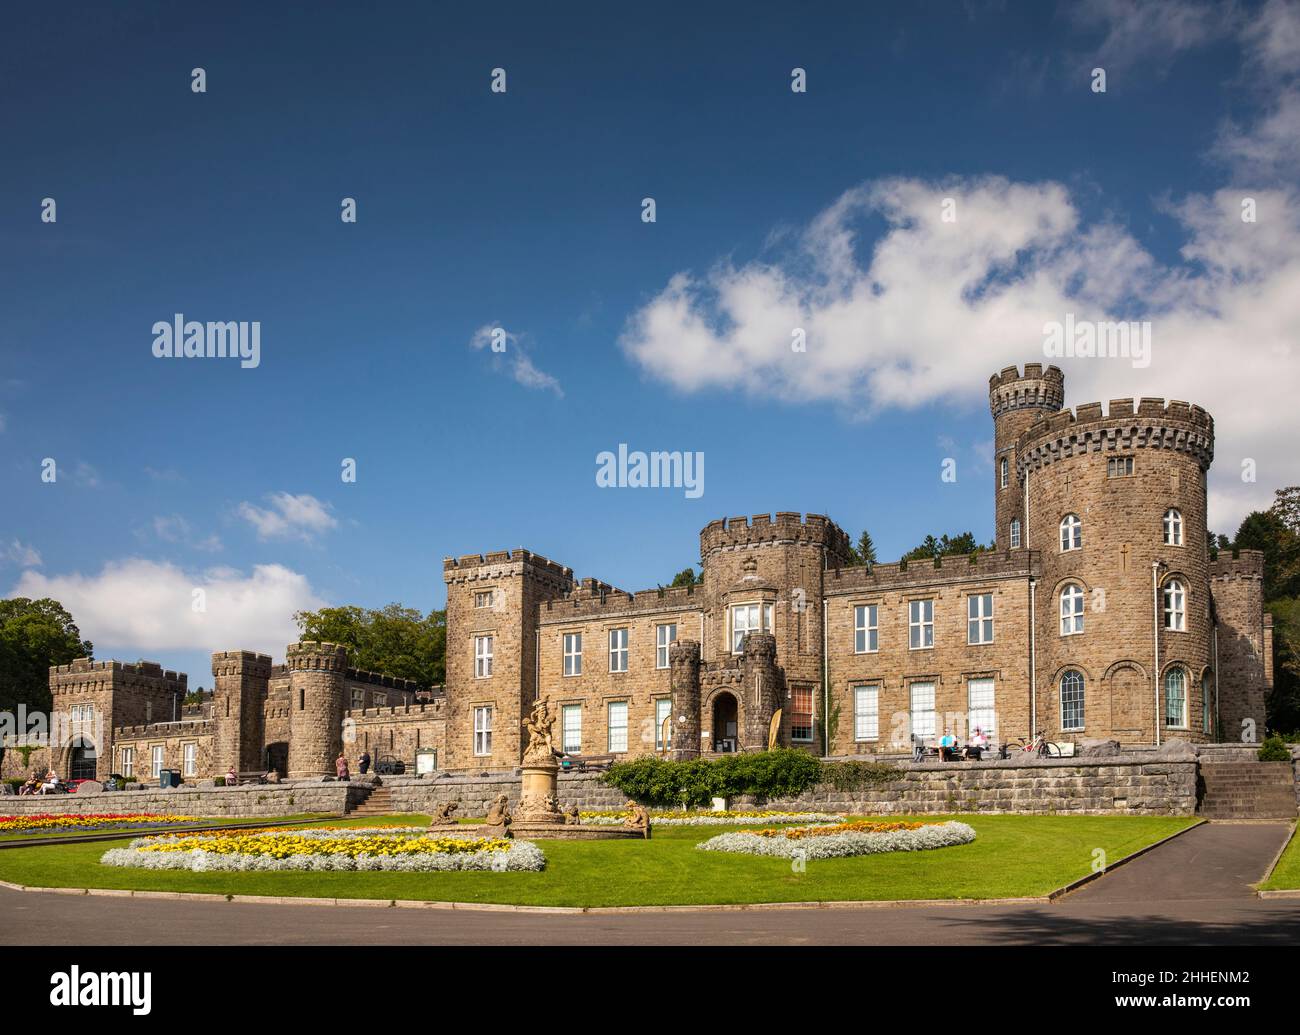 Royaume-Uni, pays de Galles, Merthyr Tydfil, Cyfartha Castle Park, lits de fleurs colorés à l'entrée du château Banque D'Images